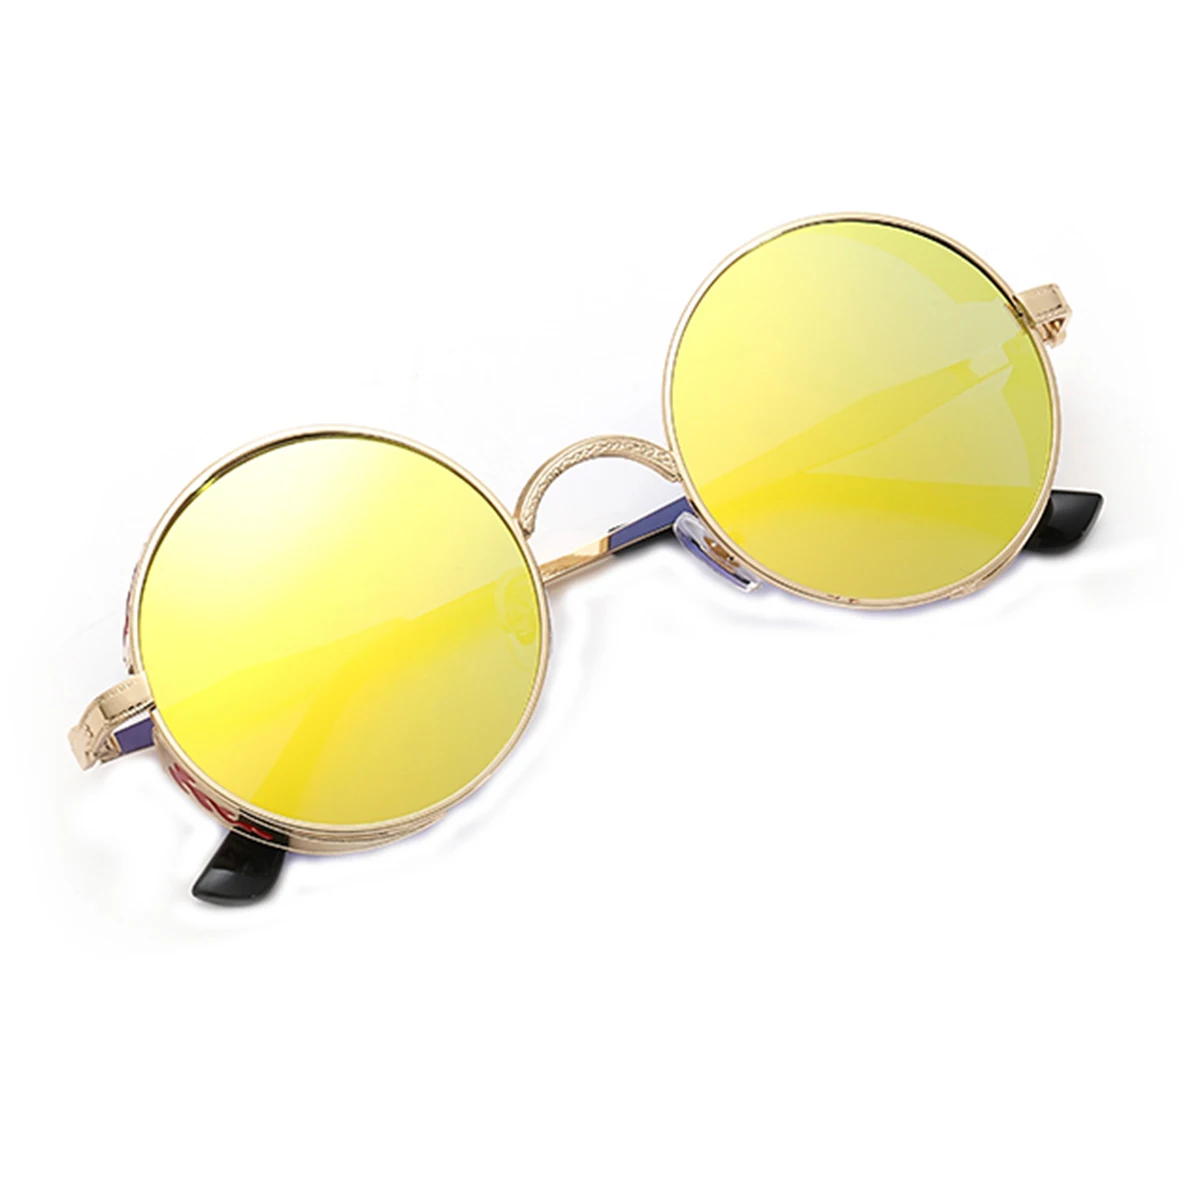 Унисекс Ретро стимпанк Стиль походные солнцезащитные очки круглые линзы металлическая полая рама Винтаж очки Для мужчин Для женщин солнцезащитные очки для вождения